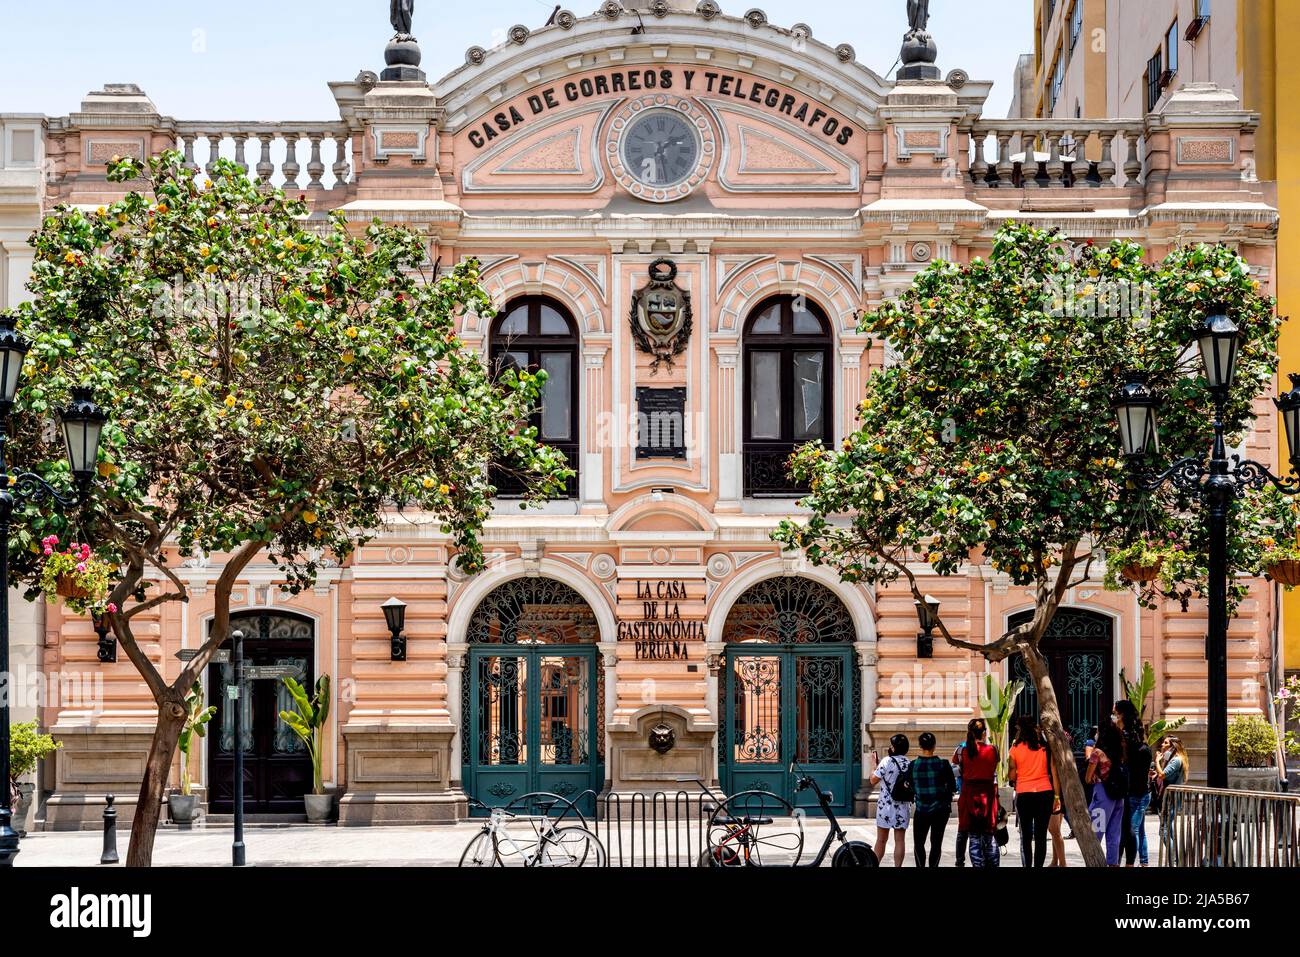 The Casa de Correos y Telegrafos (The Central Post Office) near Plaza De Armas, Lima, Peru. Stock Photo